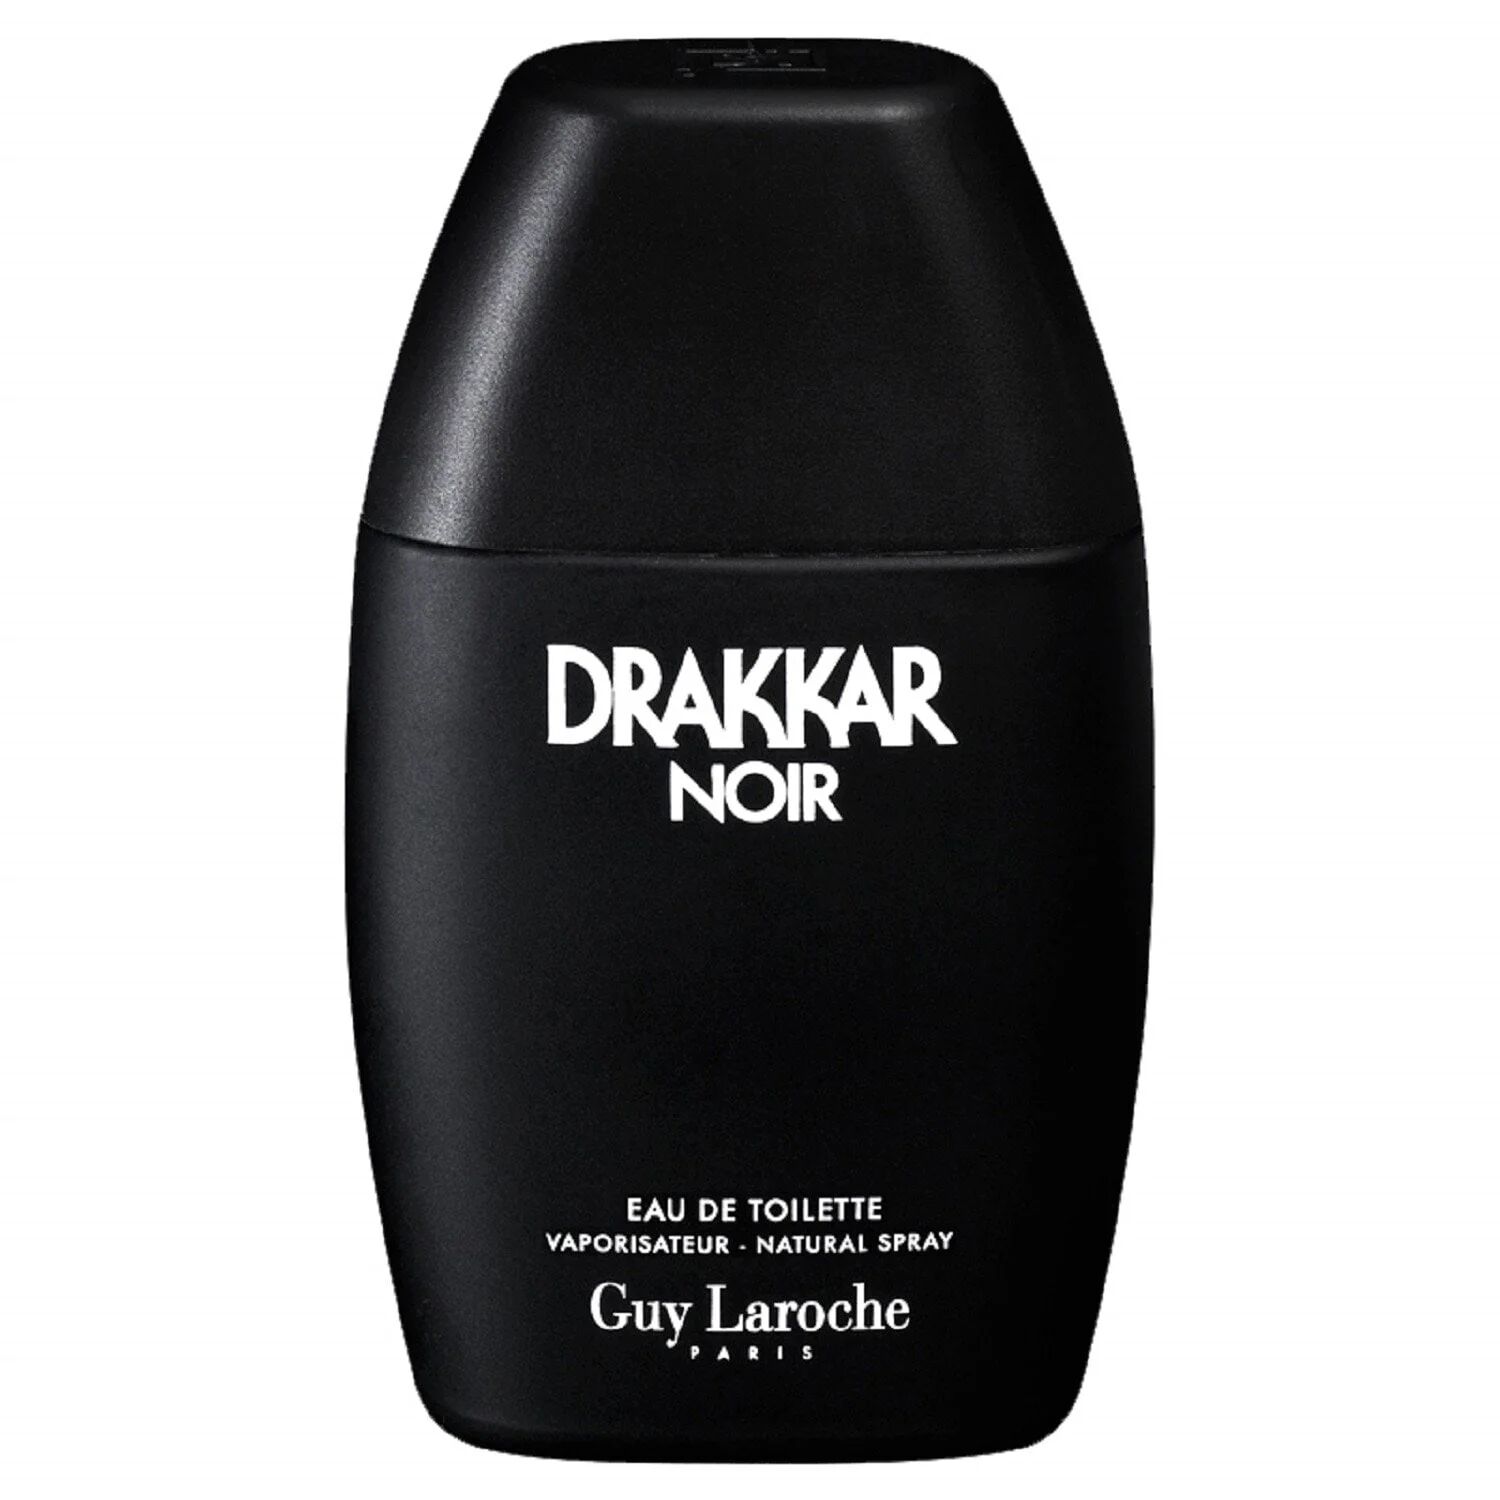 Guy Laroche Drakkar Noir - Eau de Toilette 30ml